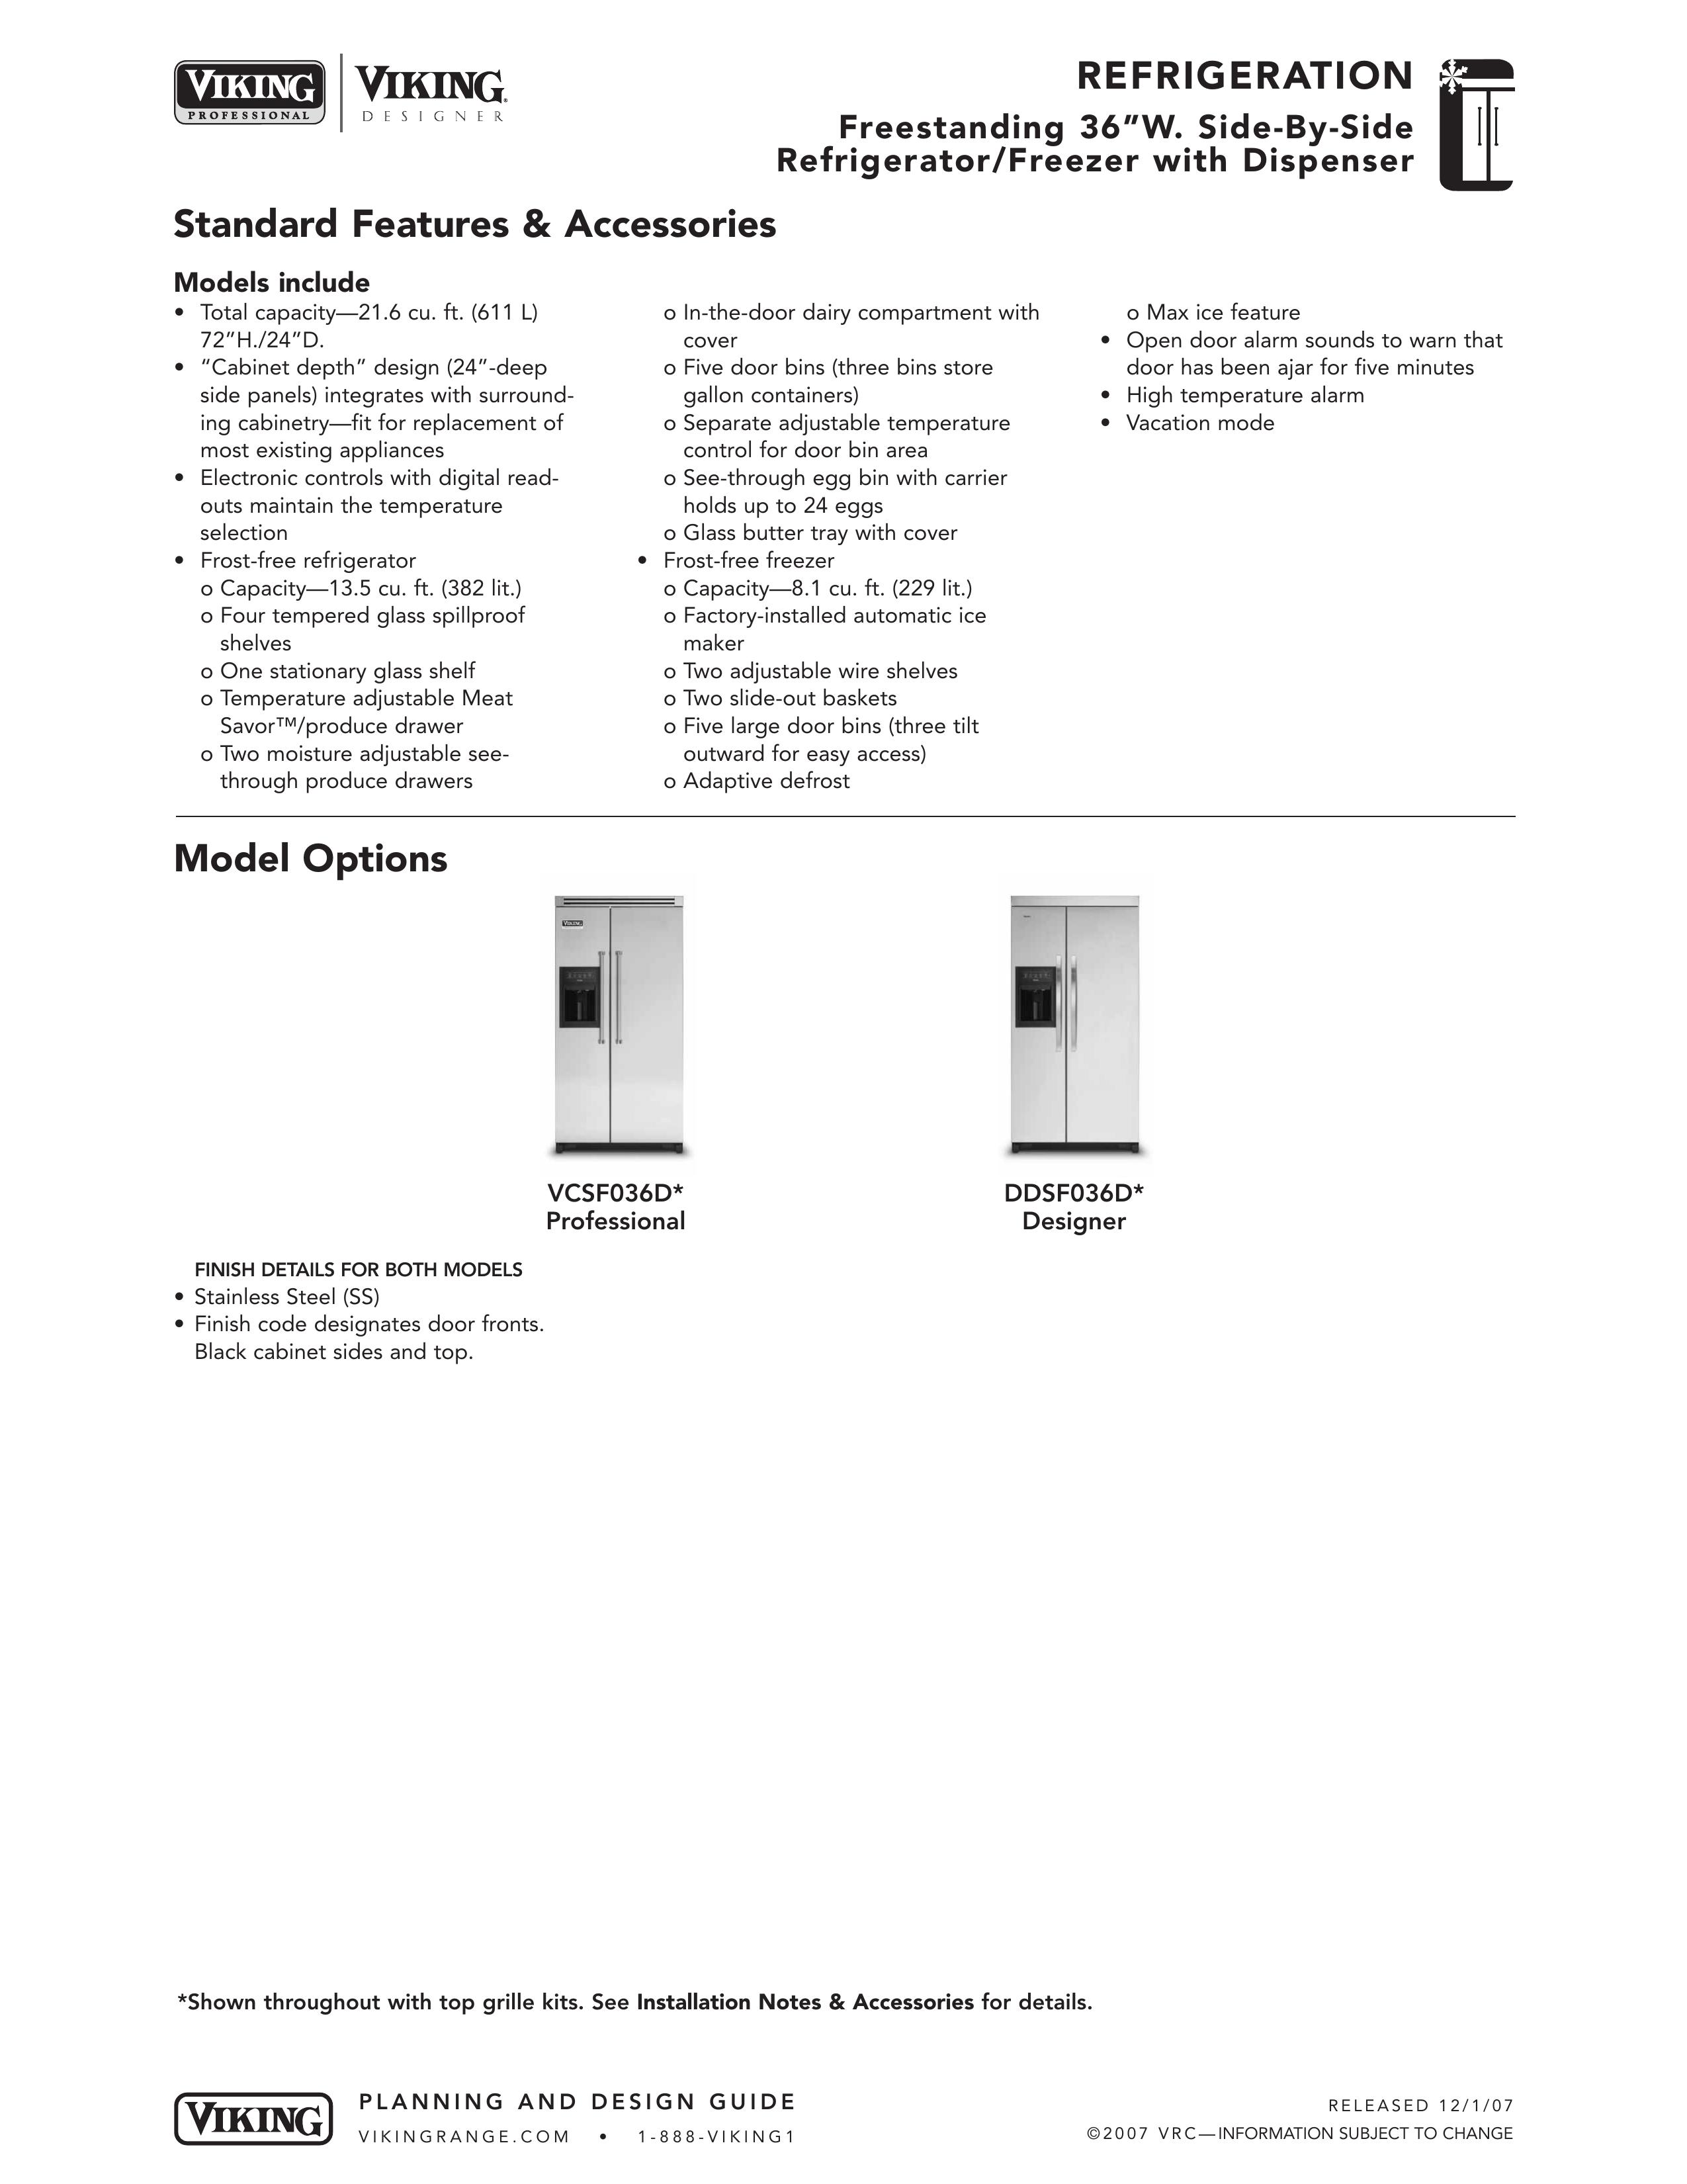 Viking DDSF036D Refrigerator User Manual